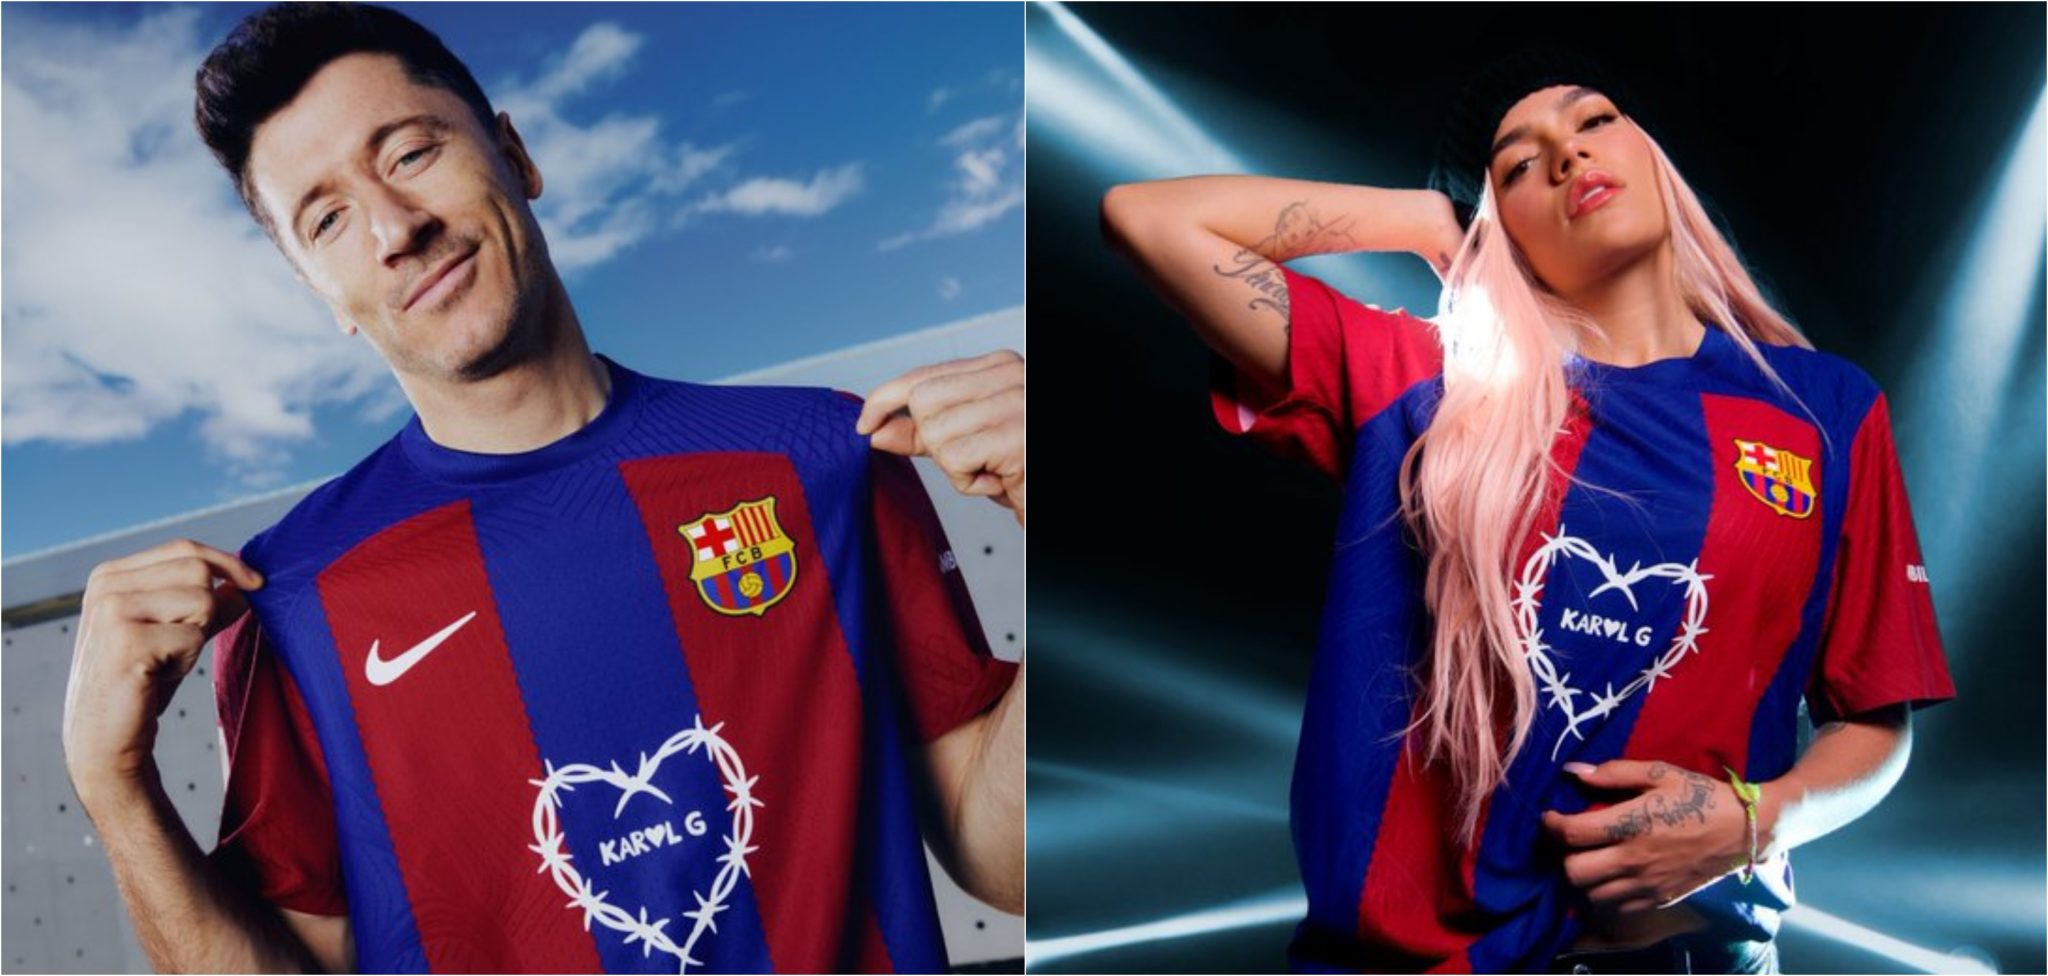 La nueva camiseta del Barcelona llevará el logo de la cantante paisa Karol G